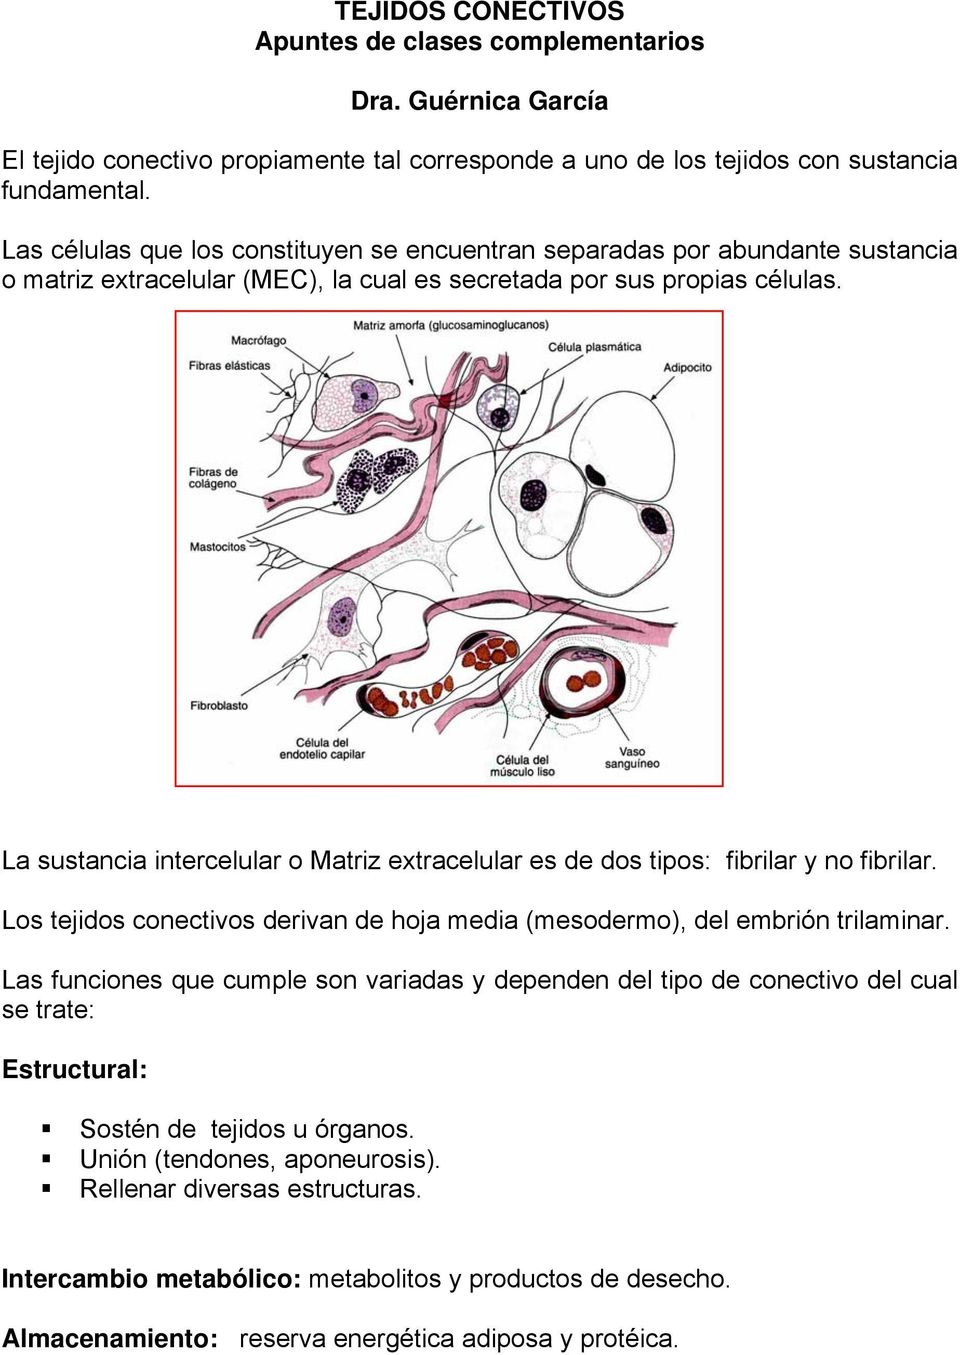 La sustancia intercelular o Matriz extracelular es de dos tipos: fibrilar y no fibrilar. Los tejidos conectivos derivan de hoja media (mesodermo), del embrión trilaminar.